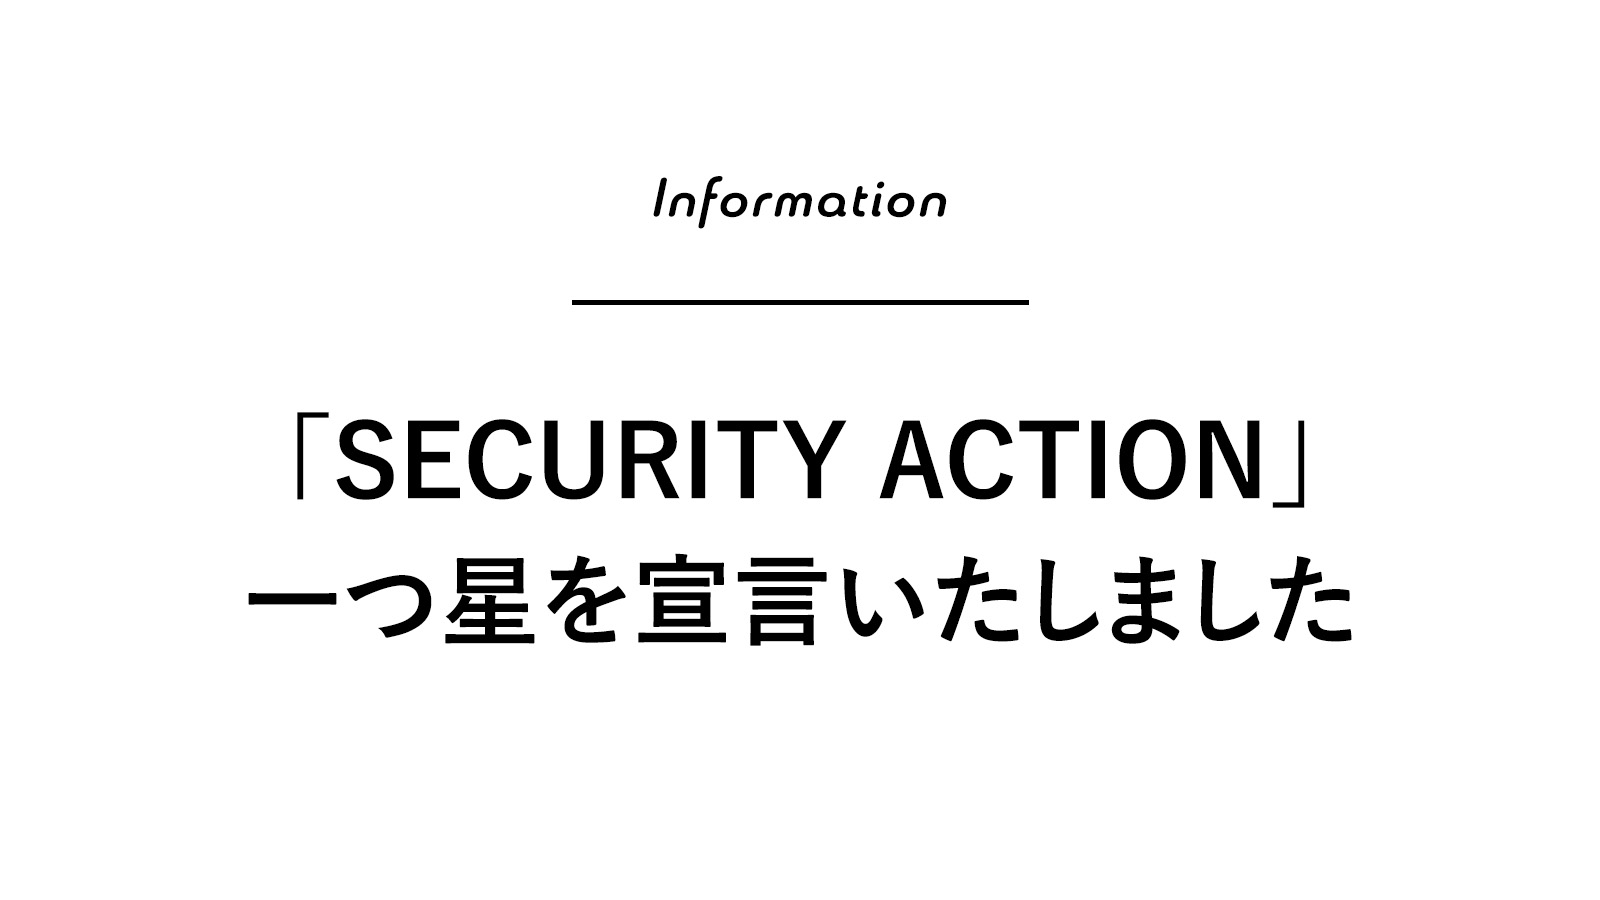 情報セキュリティ対策に取組む企業として「SECURITY ACTION」一つ星を宣言いたしました